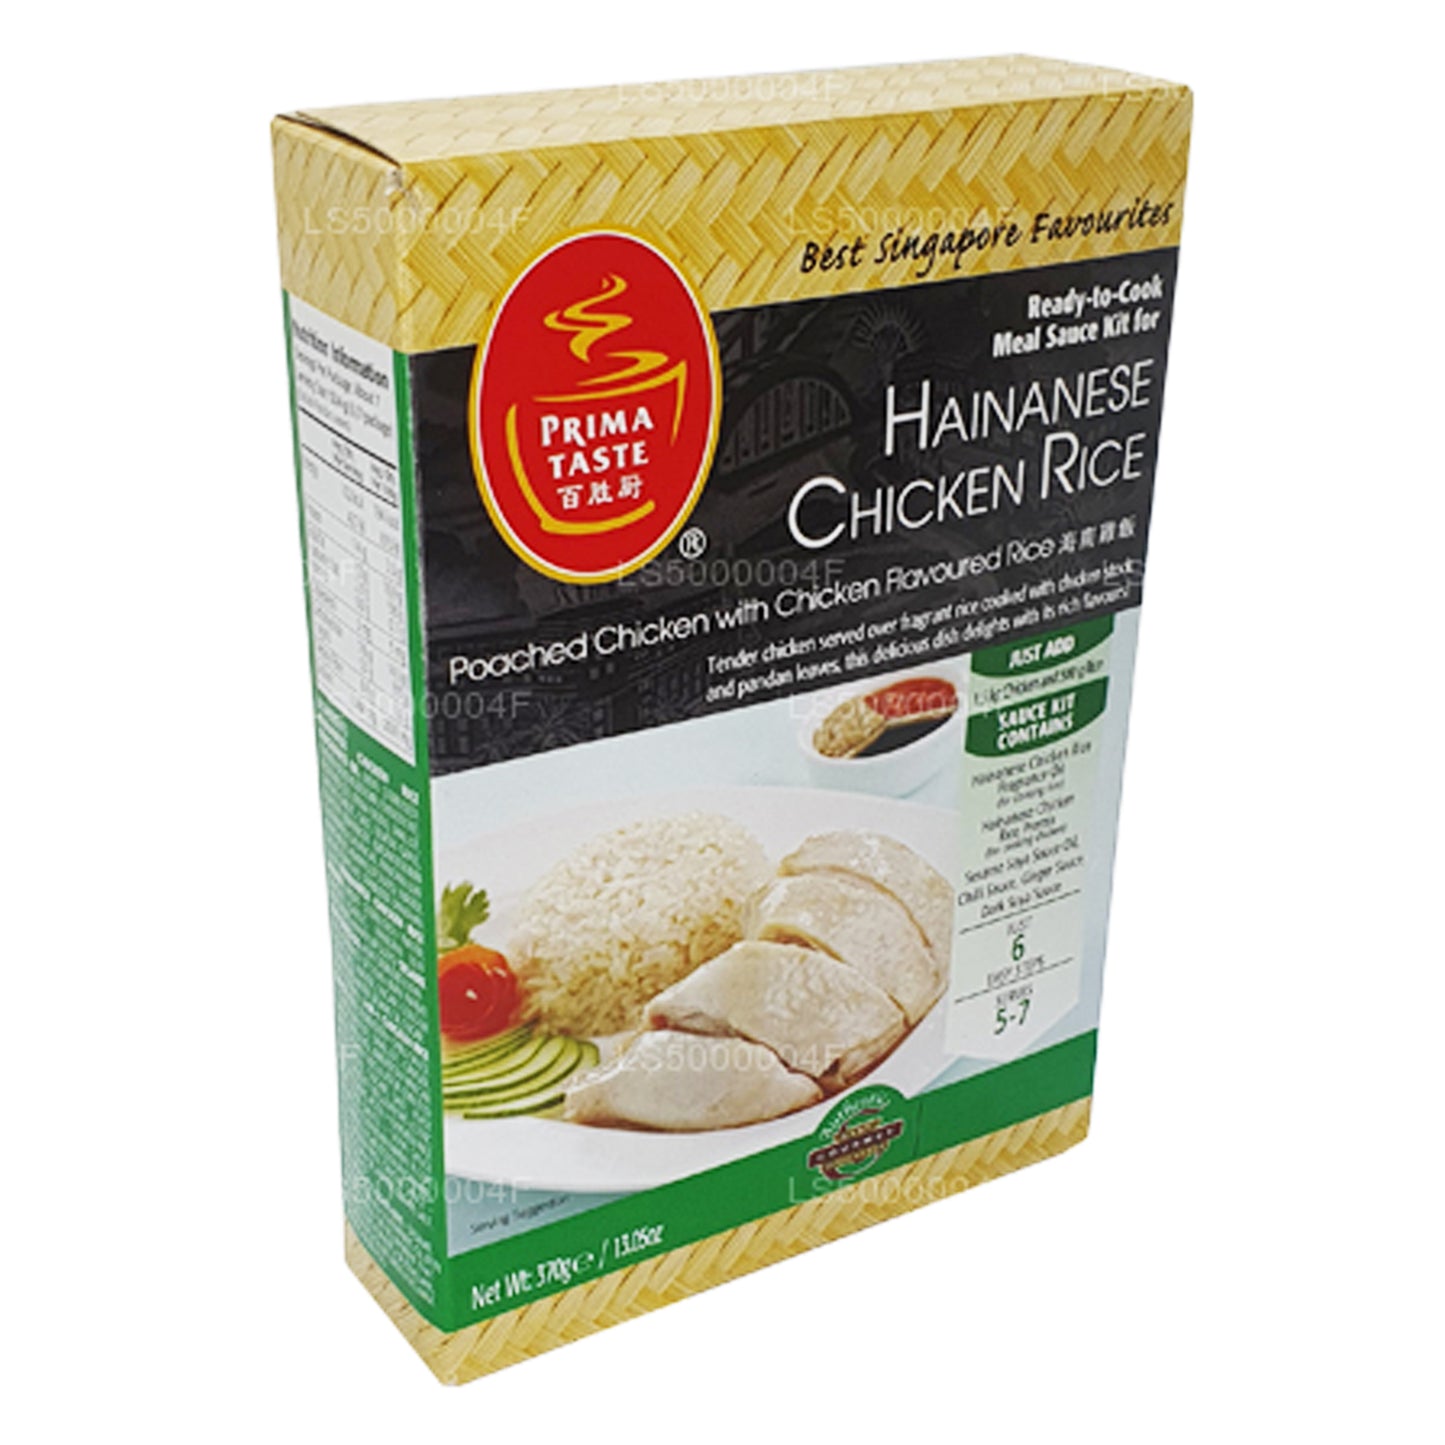 Prima Taste Hainanese kylling ris (370g)